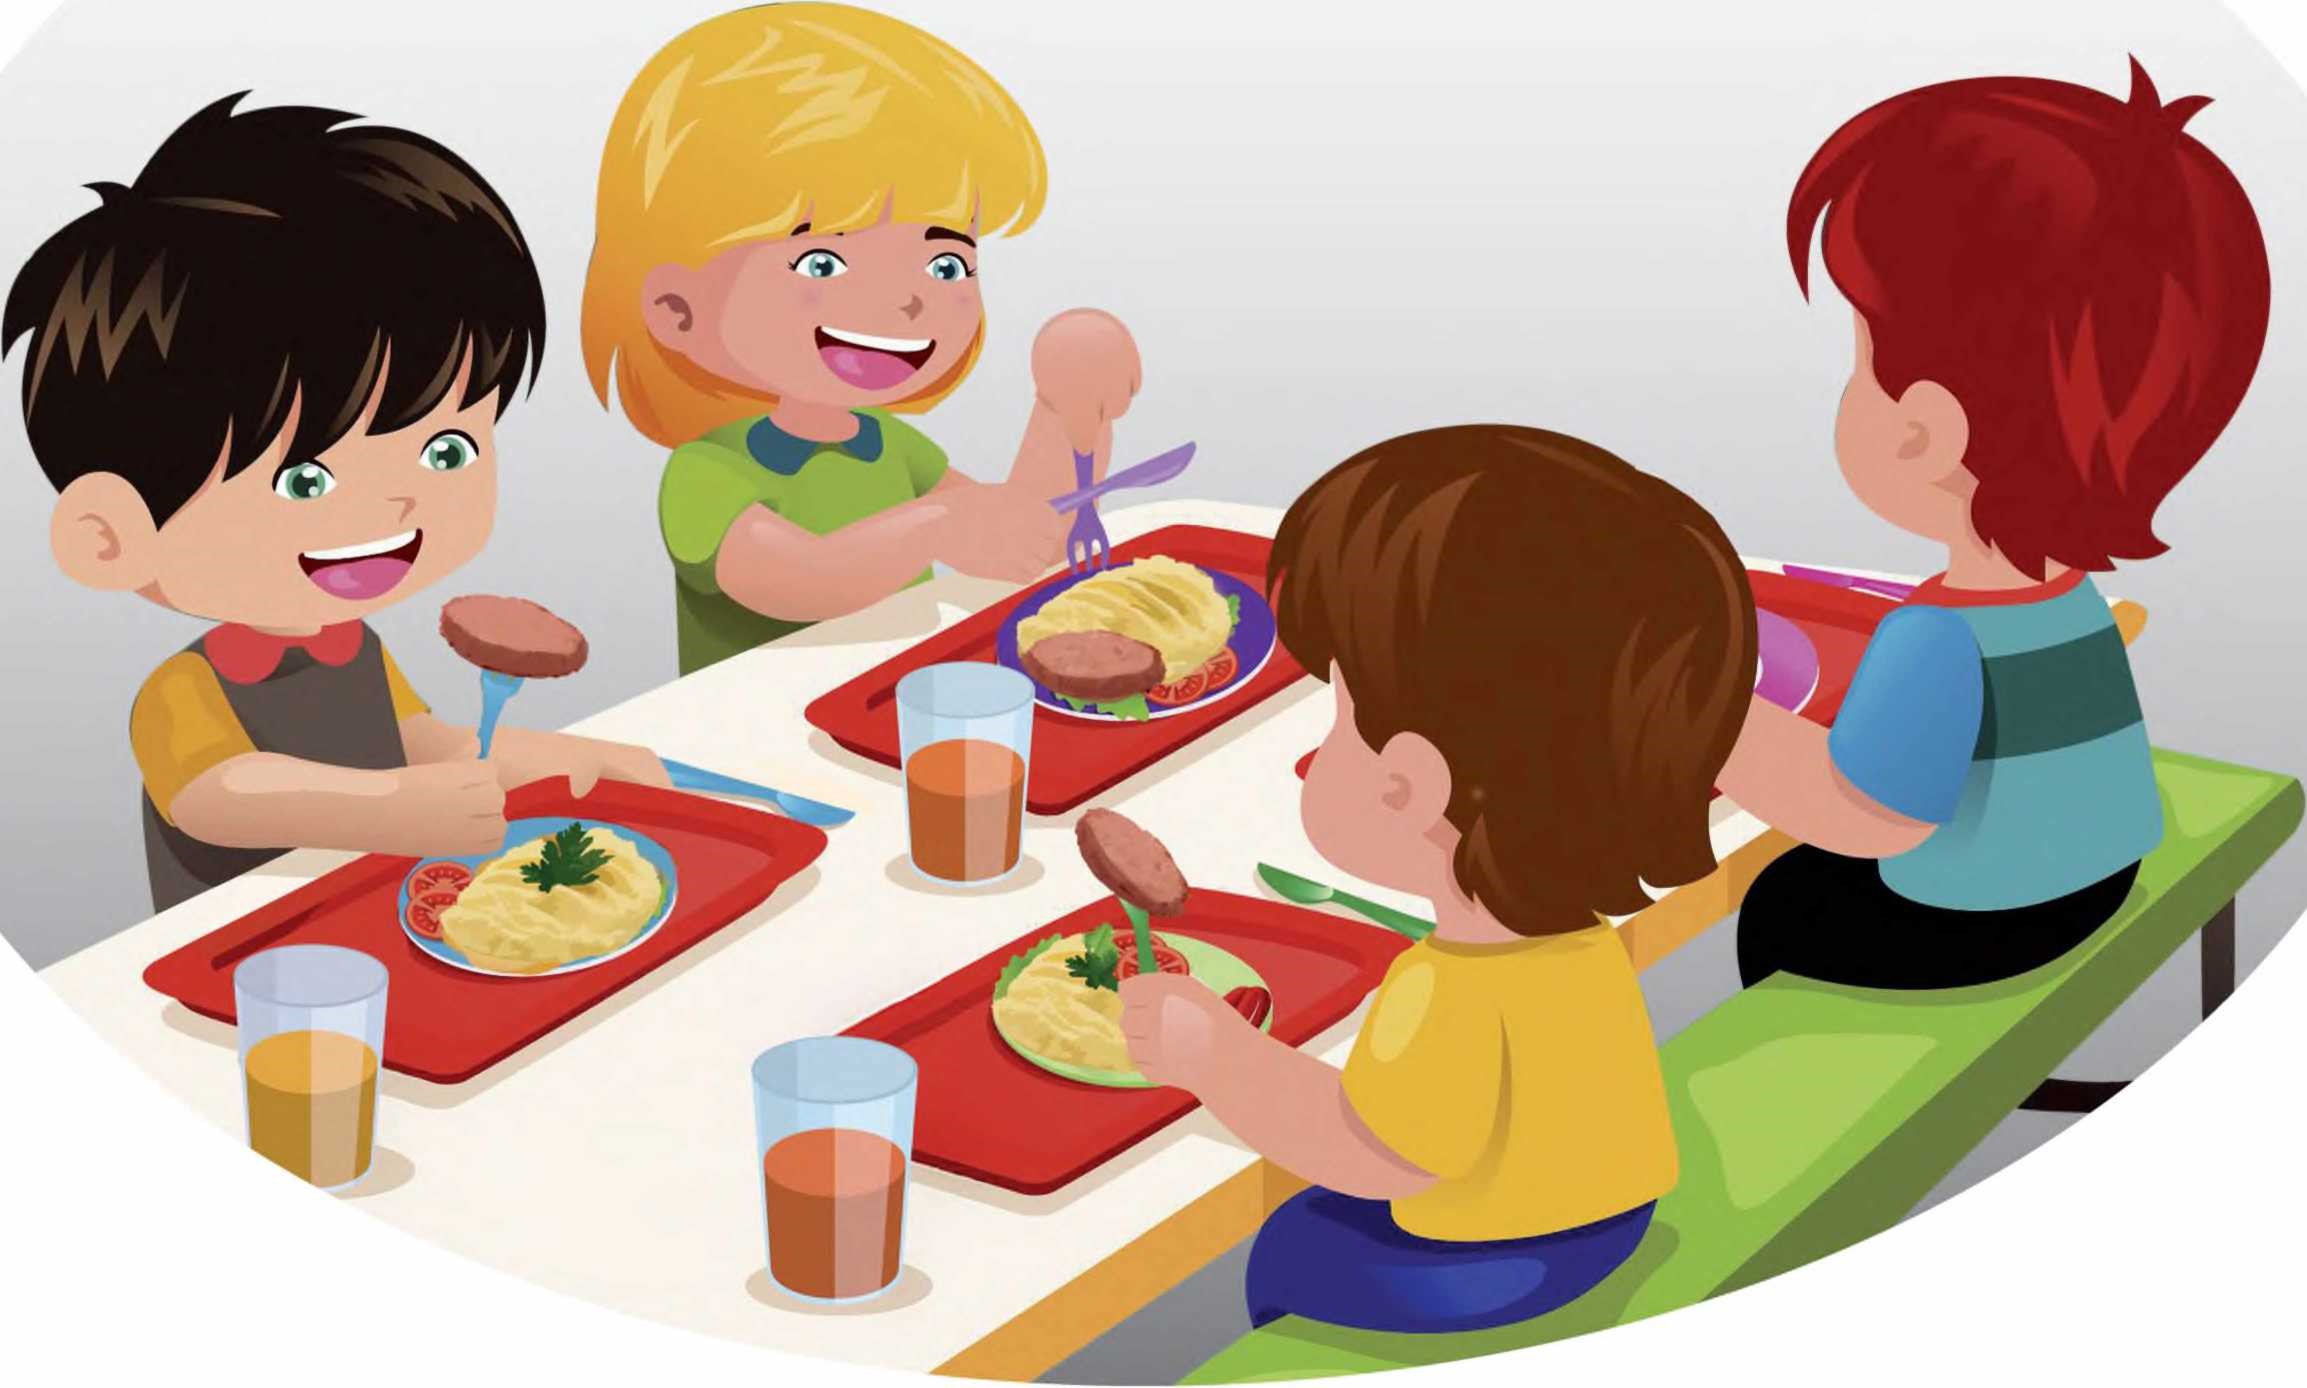 культура питания в детском саду картинки